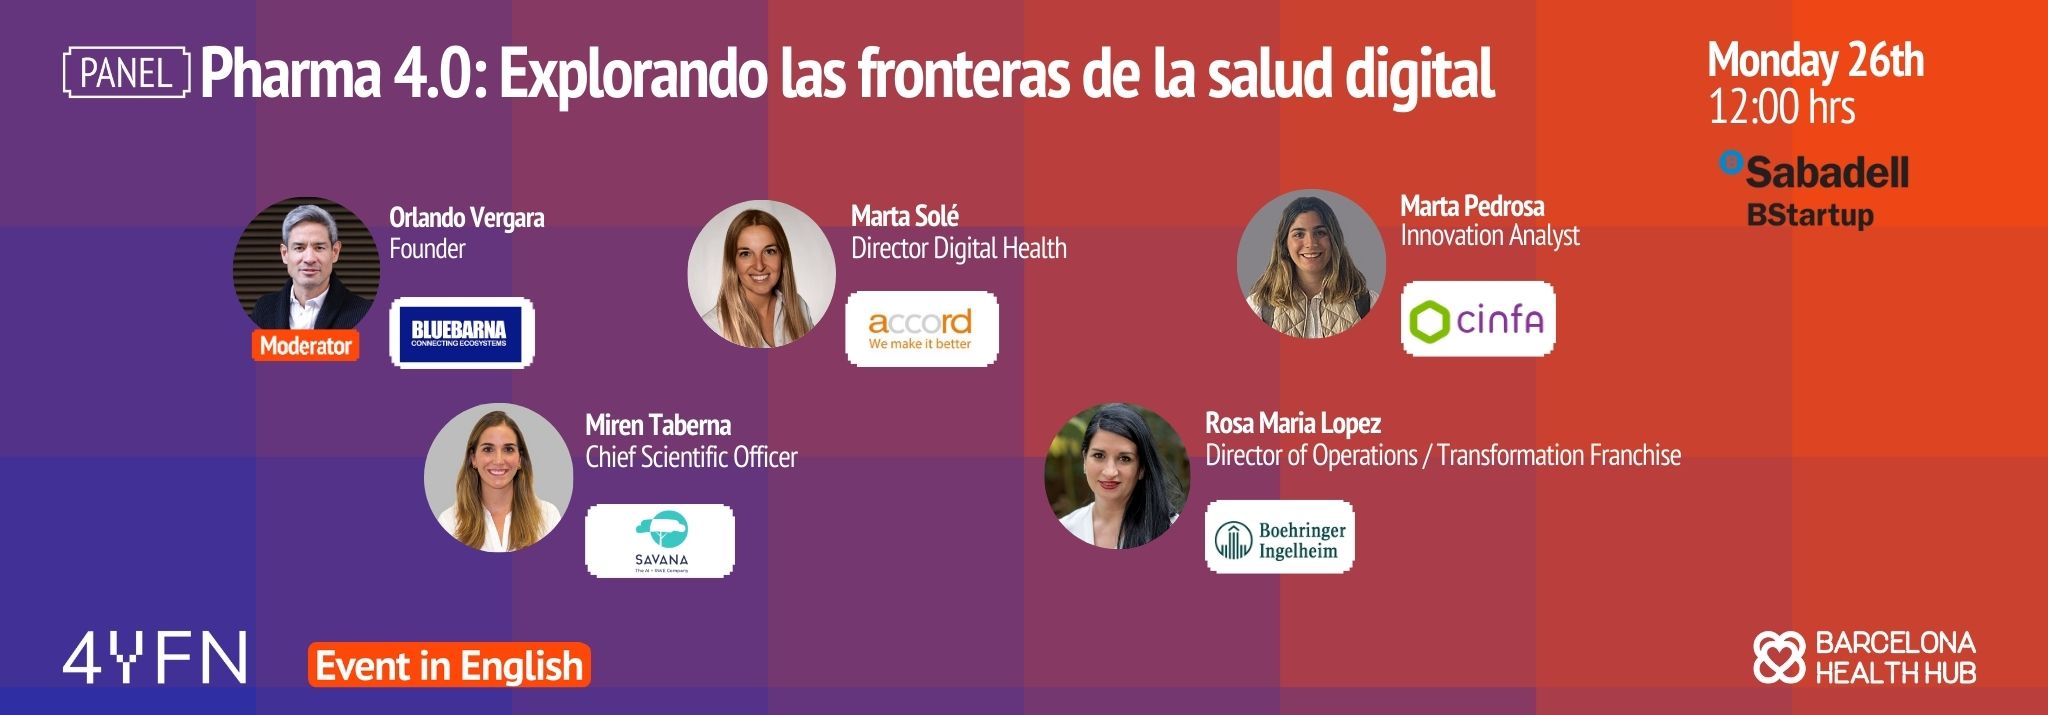 4YFN - Panel: Pharma 4.0: Explorando las fronteras de la salud digital 